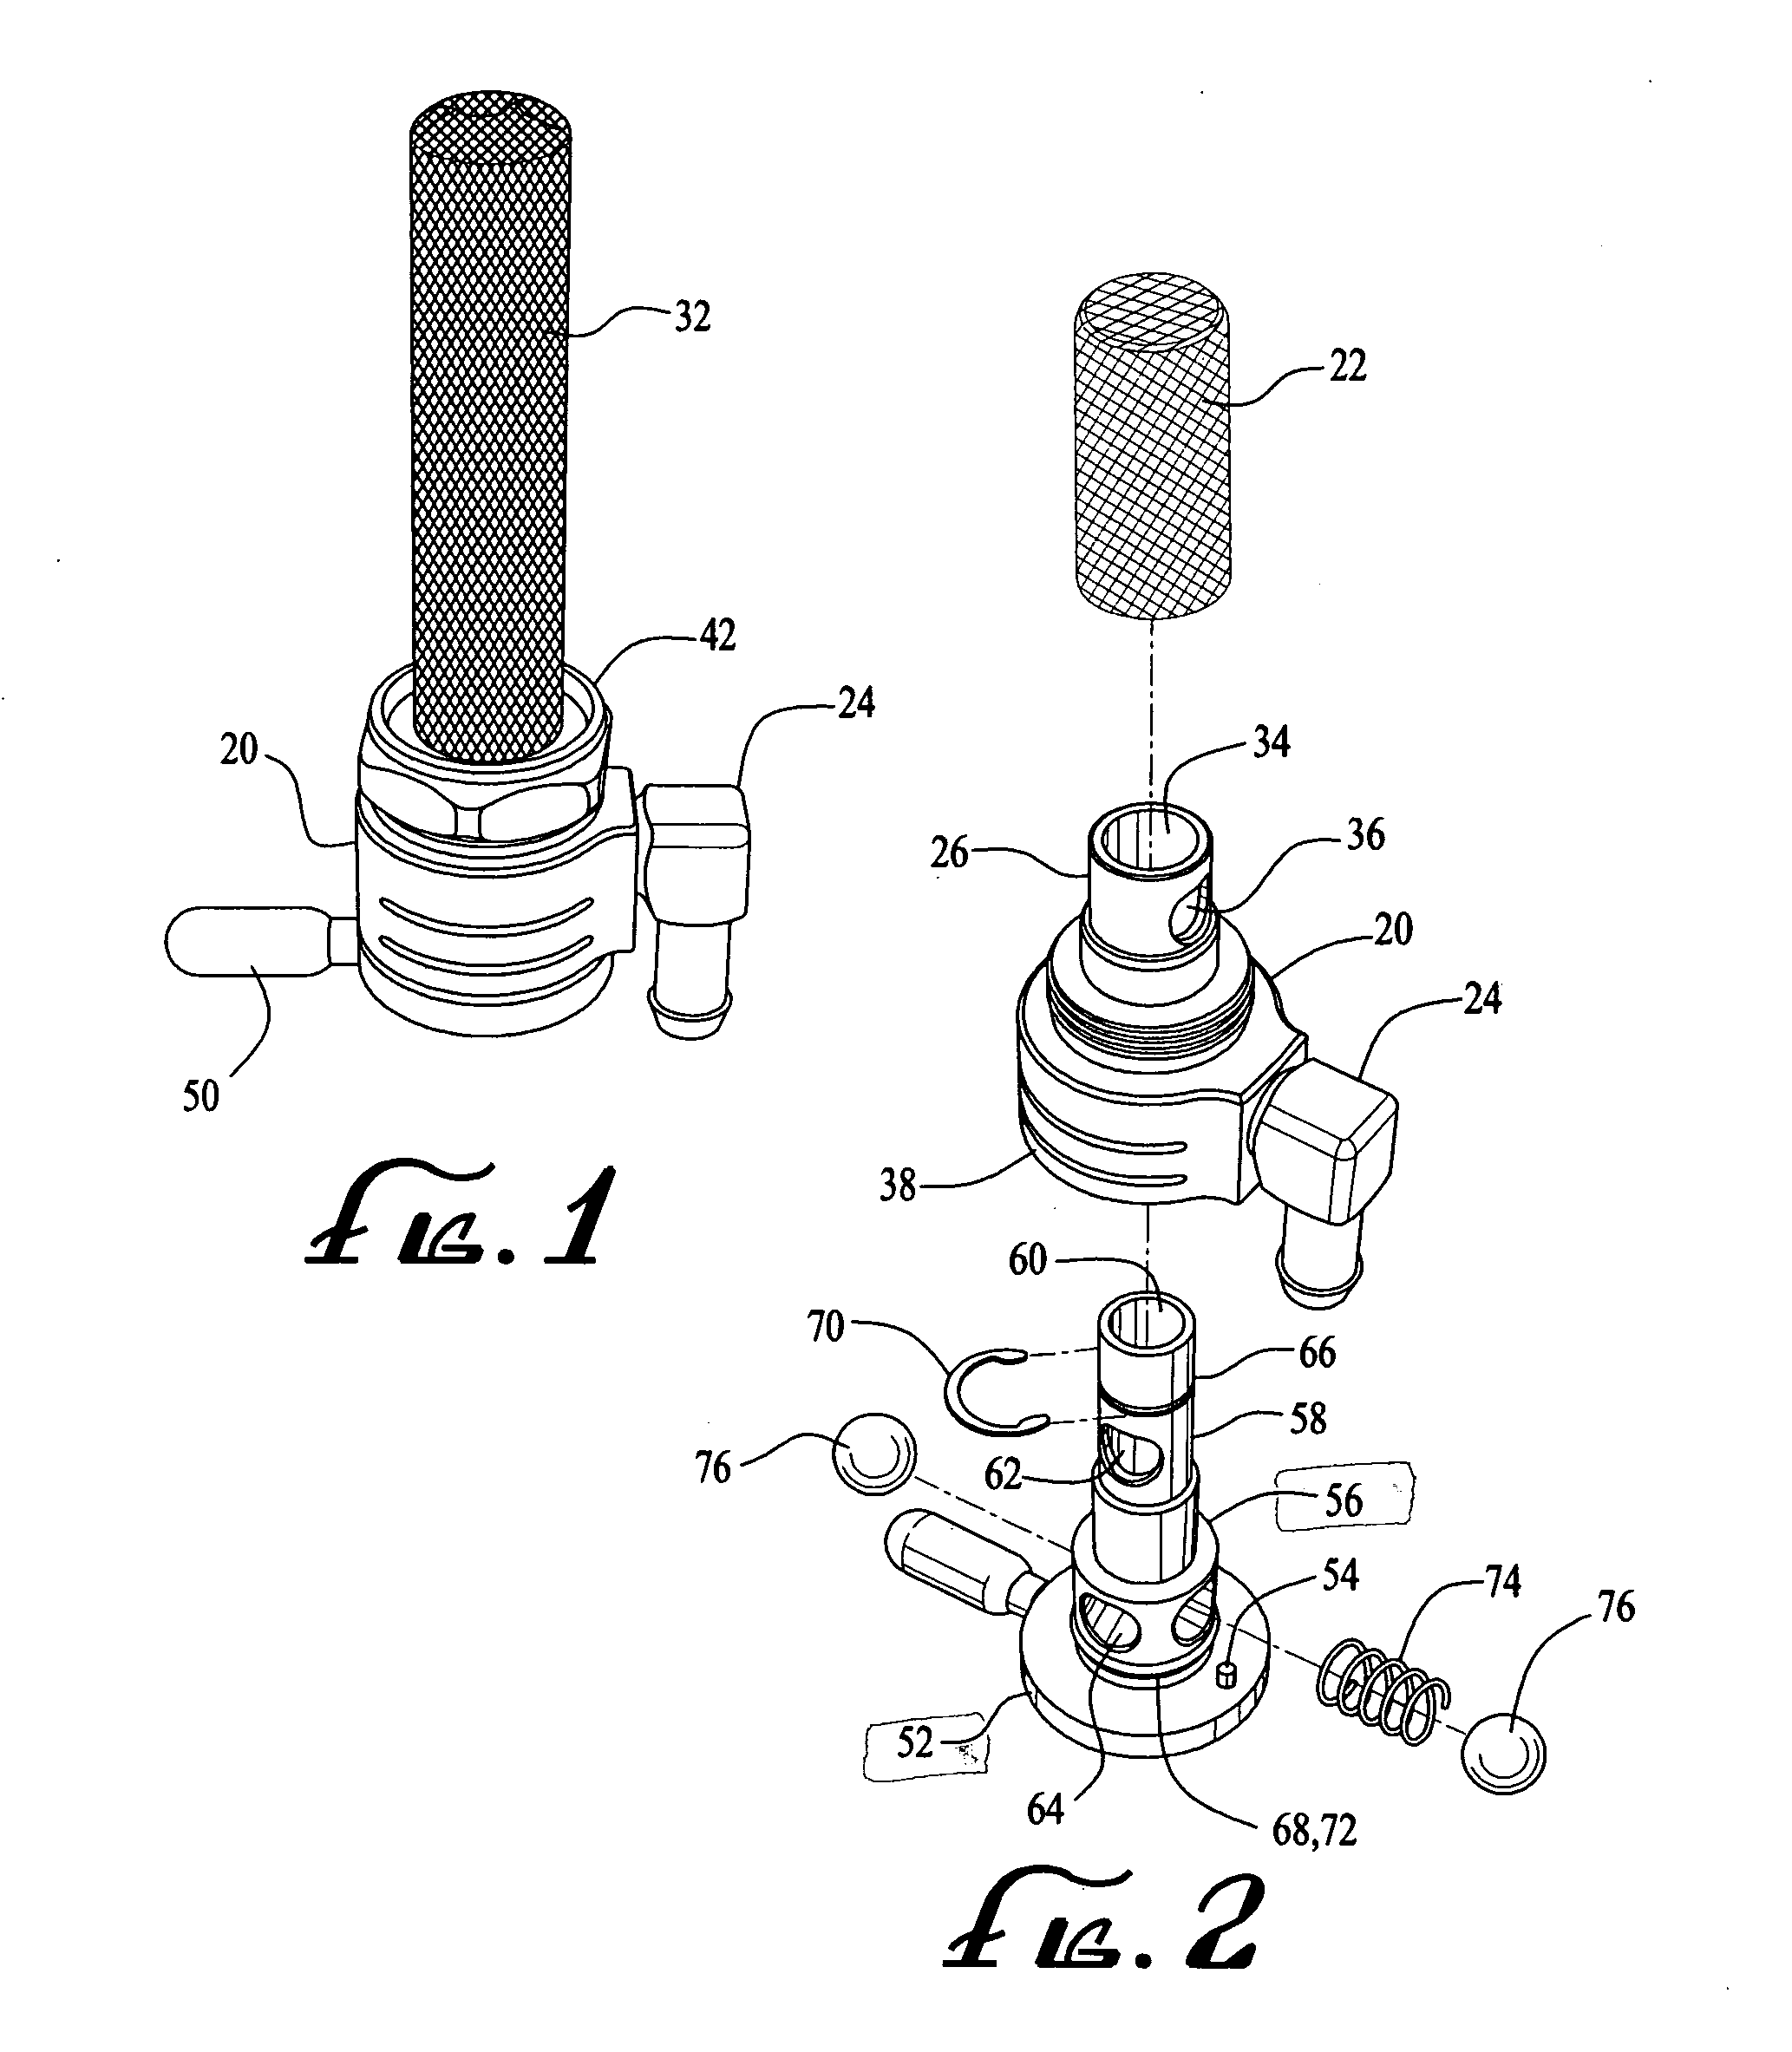 Multiple-mode fluid valve